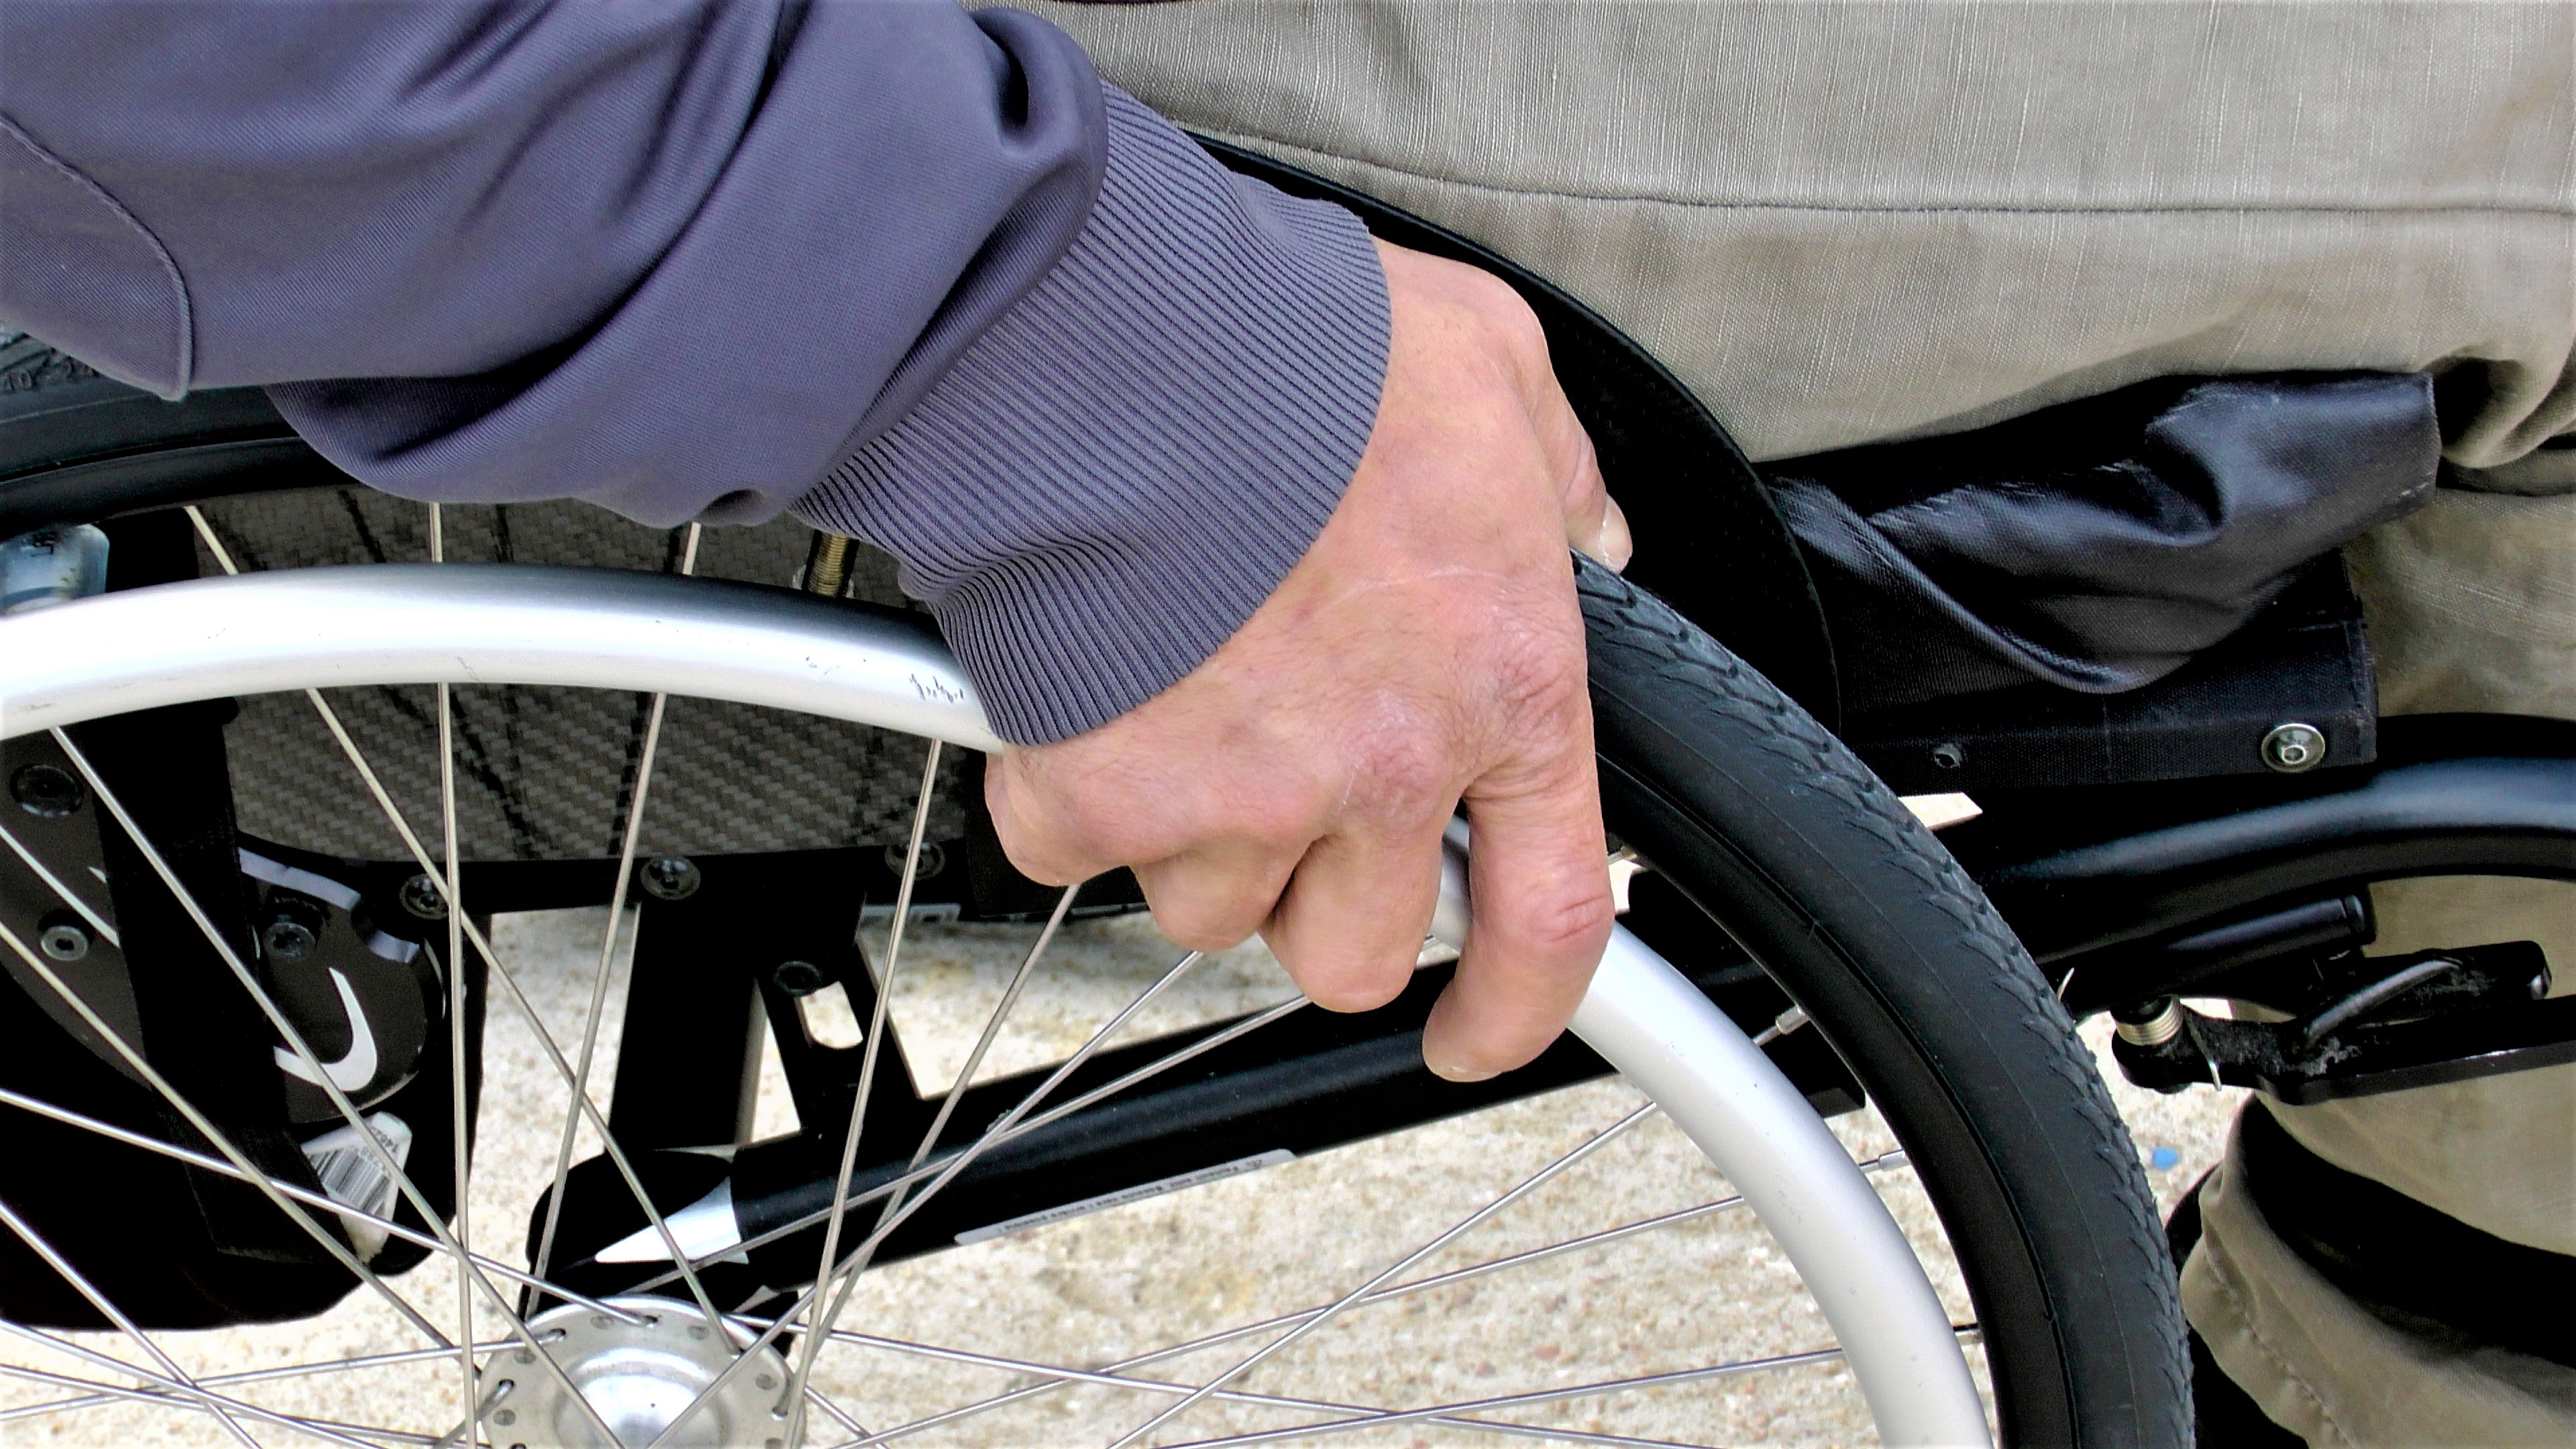 Bezirk Schwaben: Hilfen für die Einrichtungen für behinderte Menschen sind gewährleistet